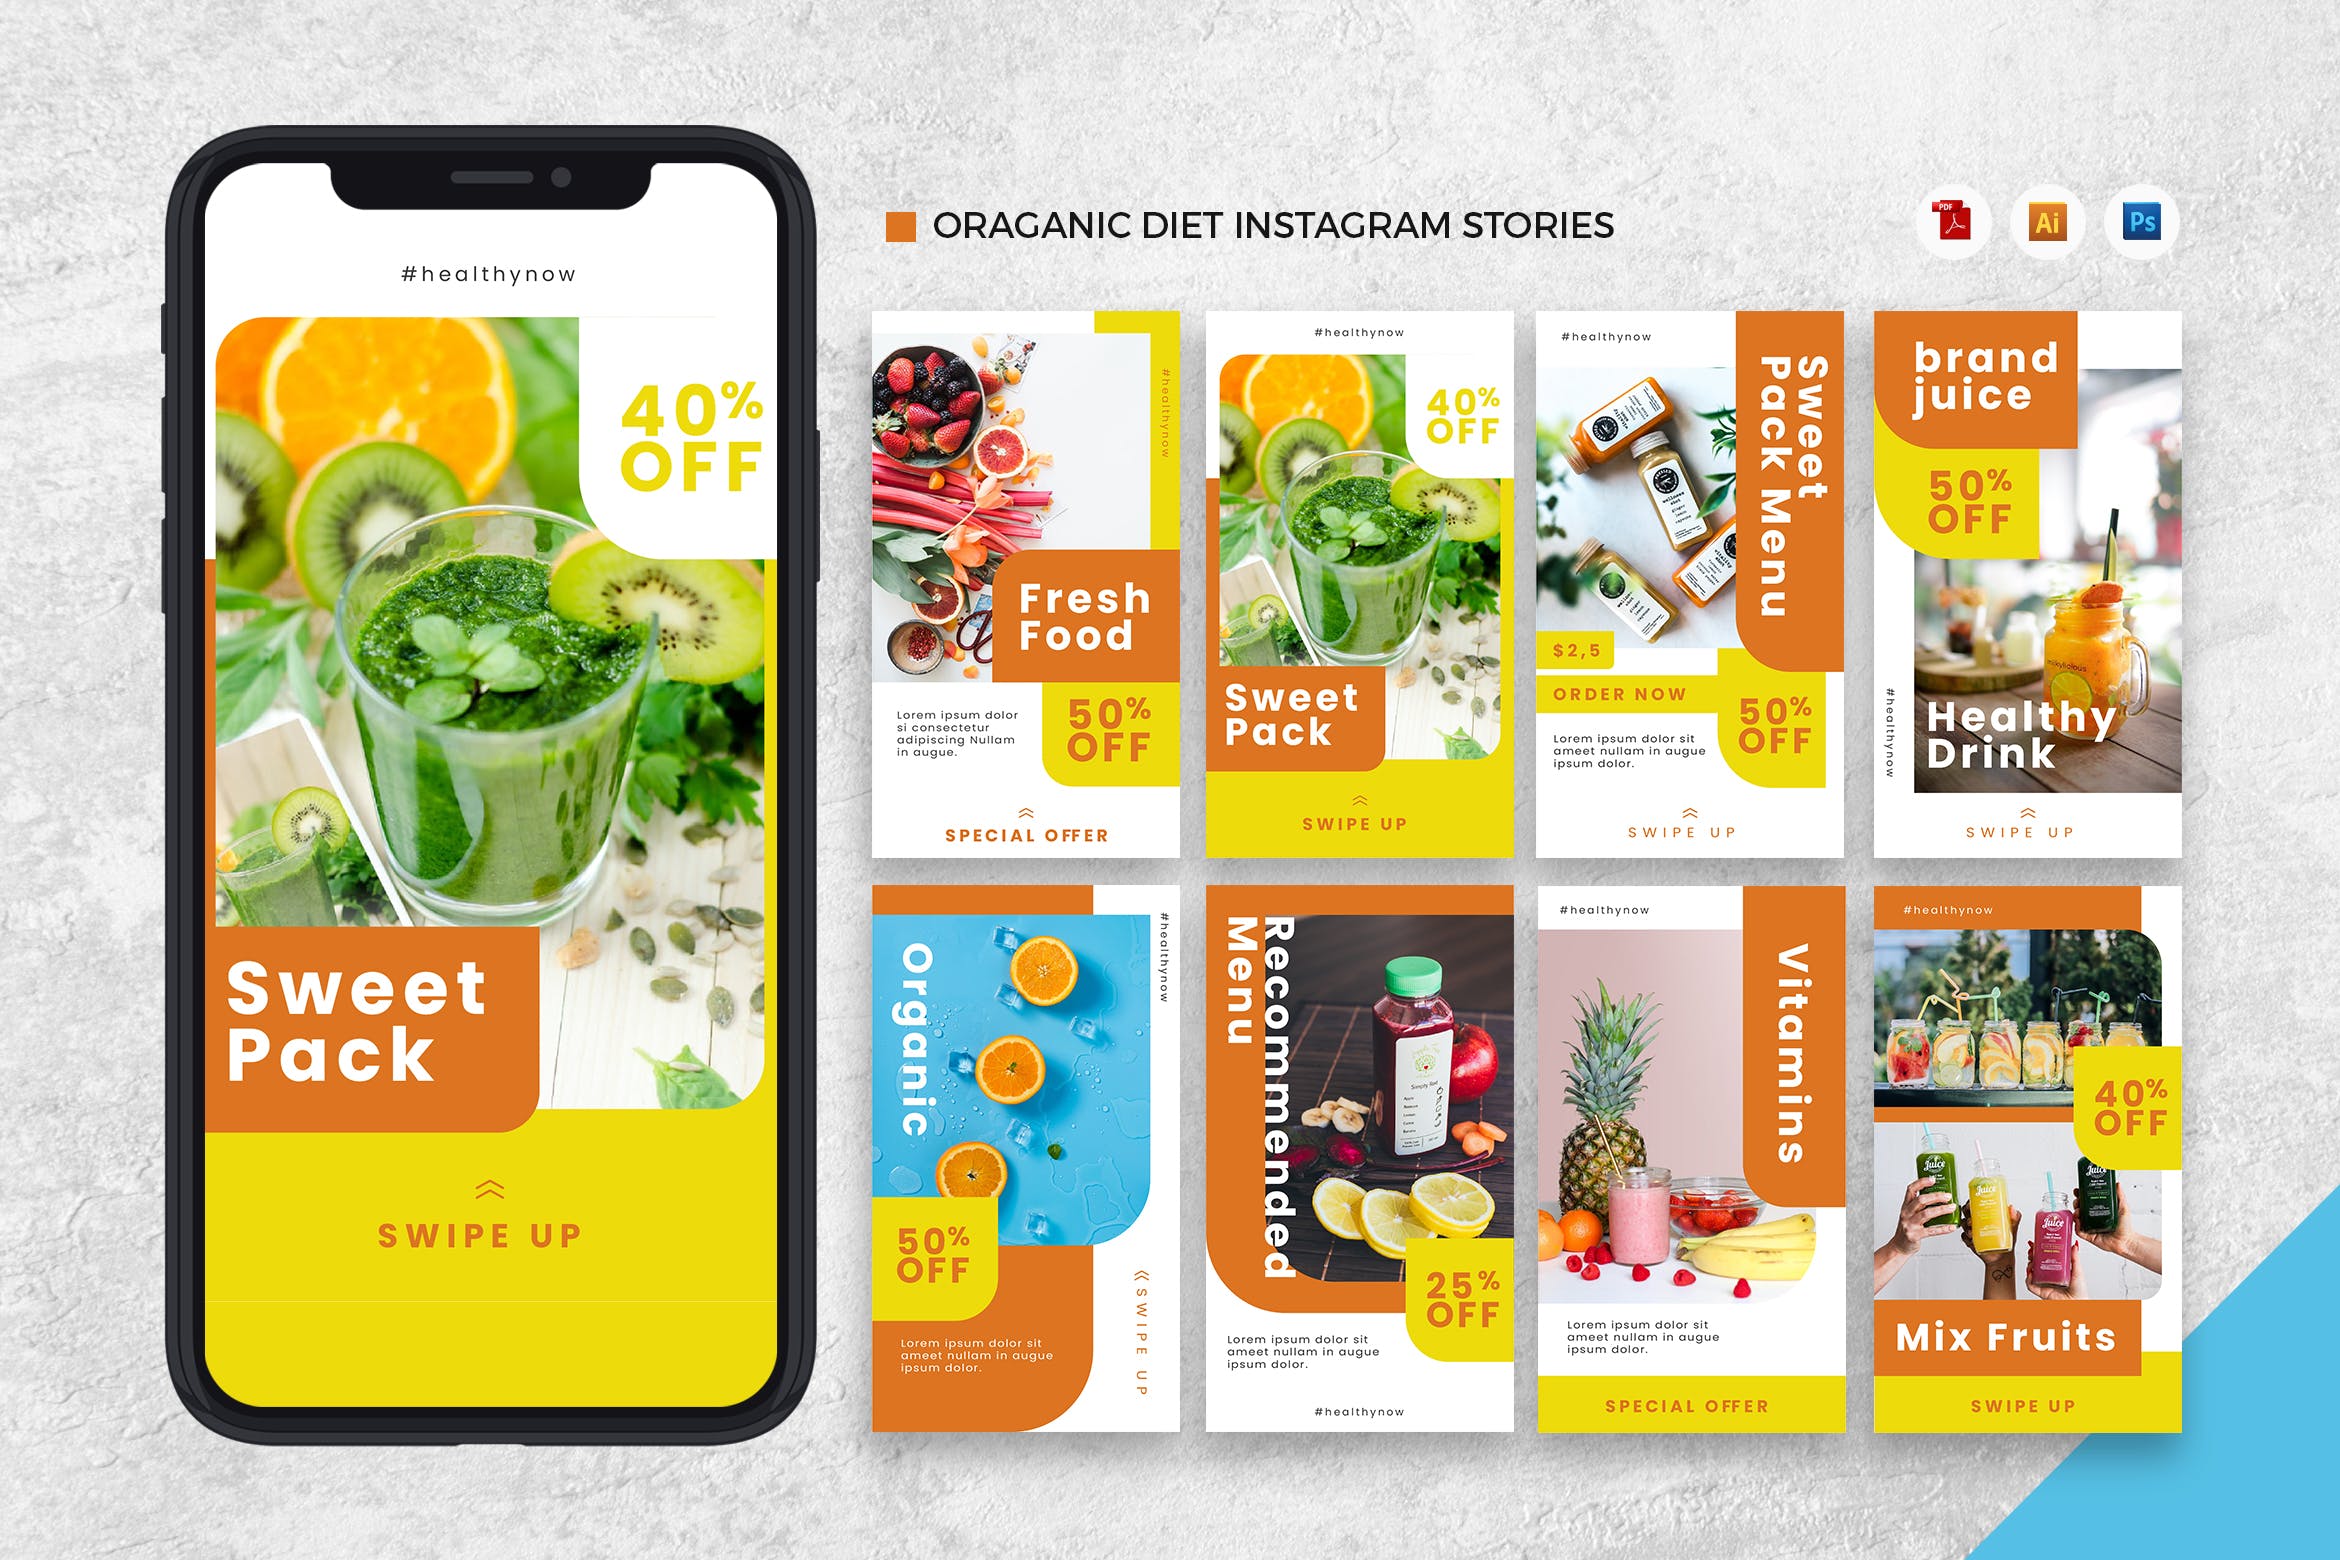 有机食物品牌Instagram社交推广设计素材[AI&PSD] Organic Diet Instagram Stories AI and PSD Template插图